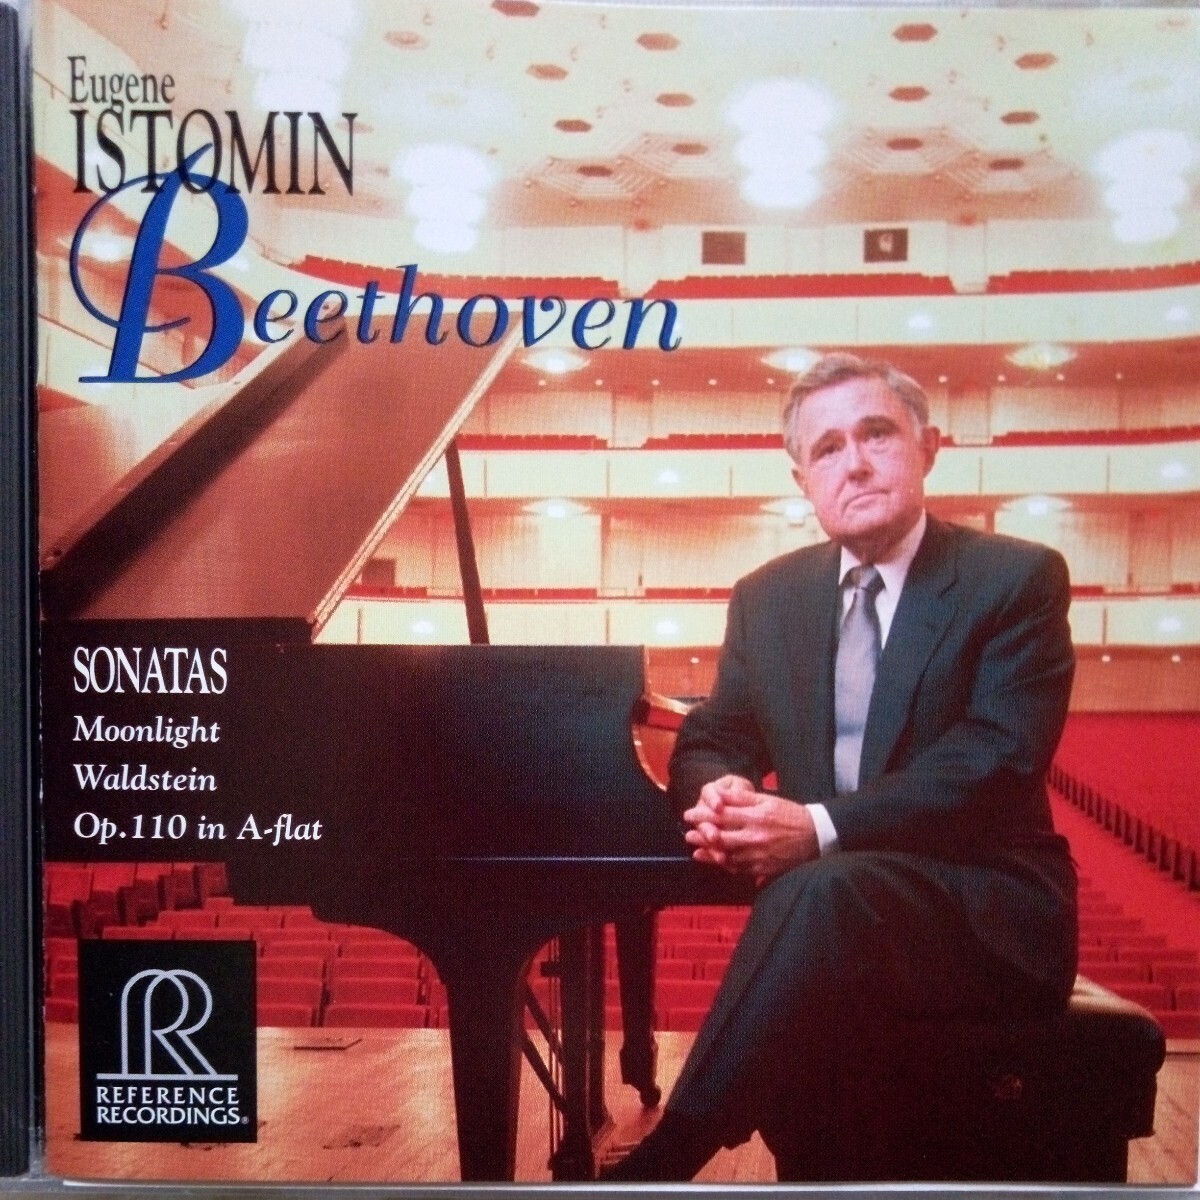 ベートーヴェン/ピアノソナタ第14番「月光」第21番「ワルトシュタイン」第31番 E.イストミン(P)リファレンスRR-69CD 美盤の画像1